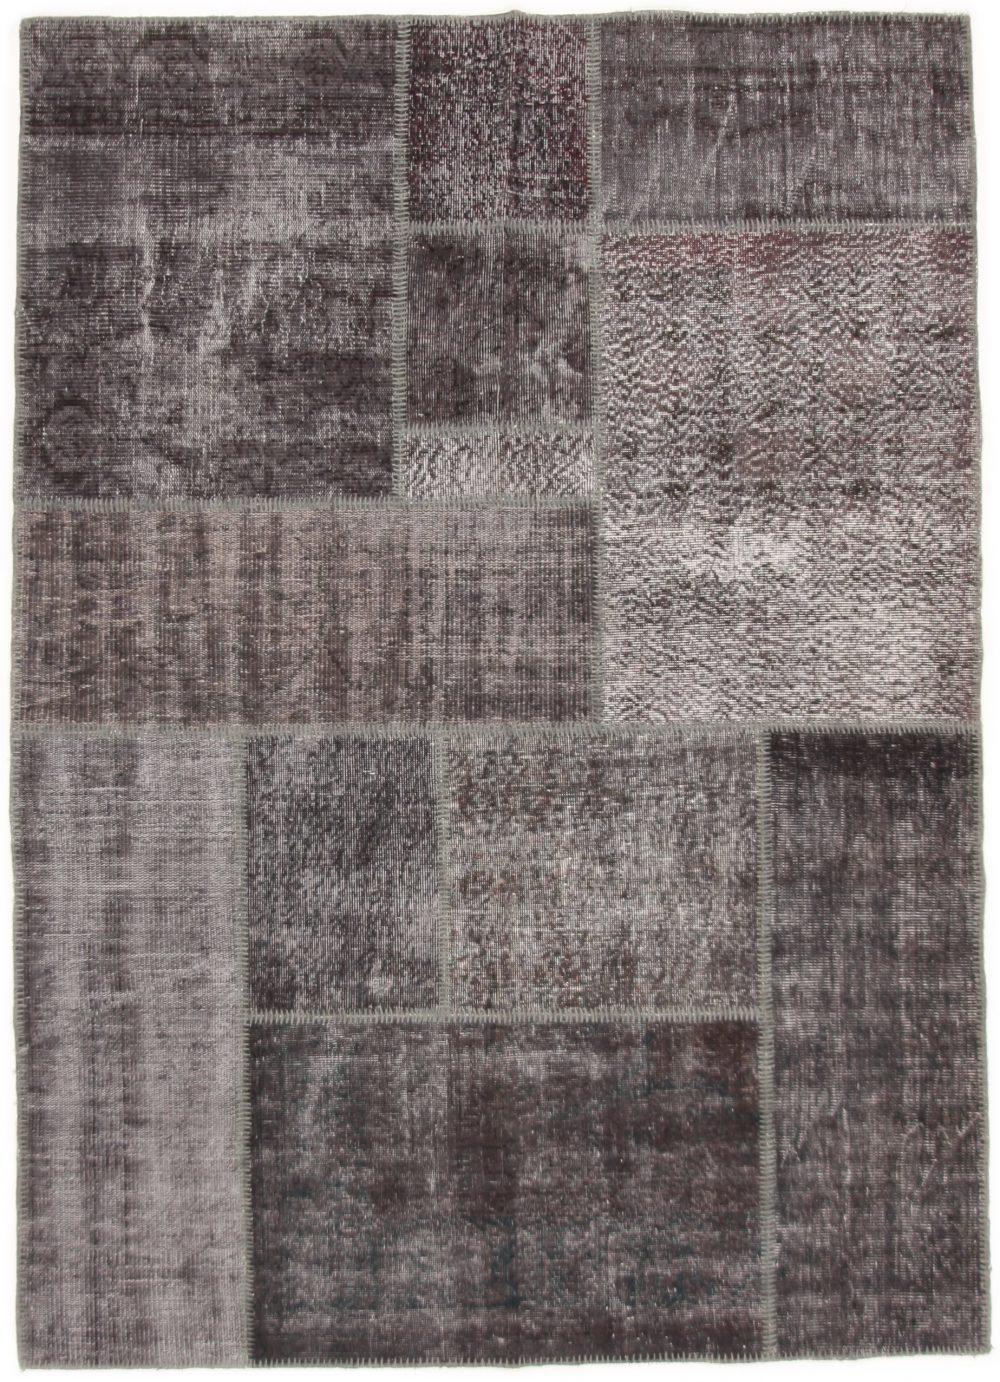 tapijt met vlakken